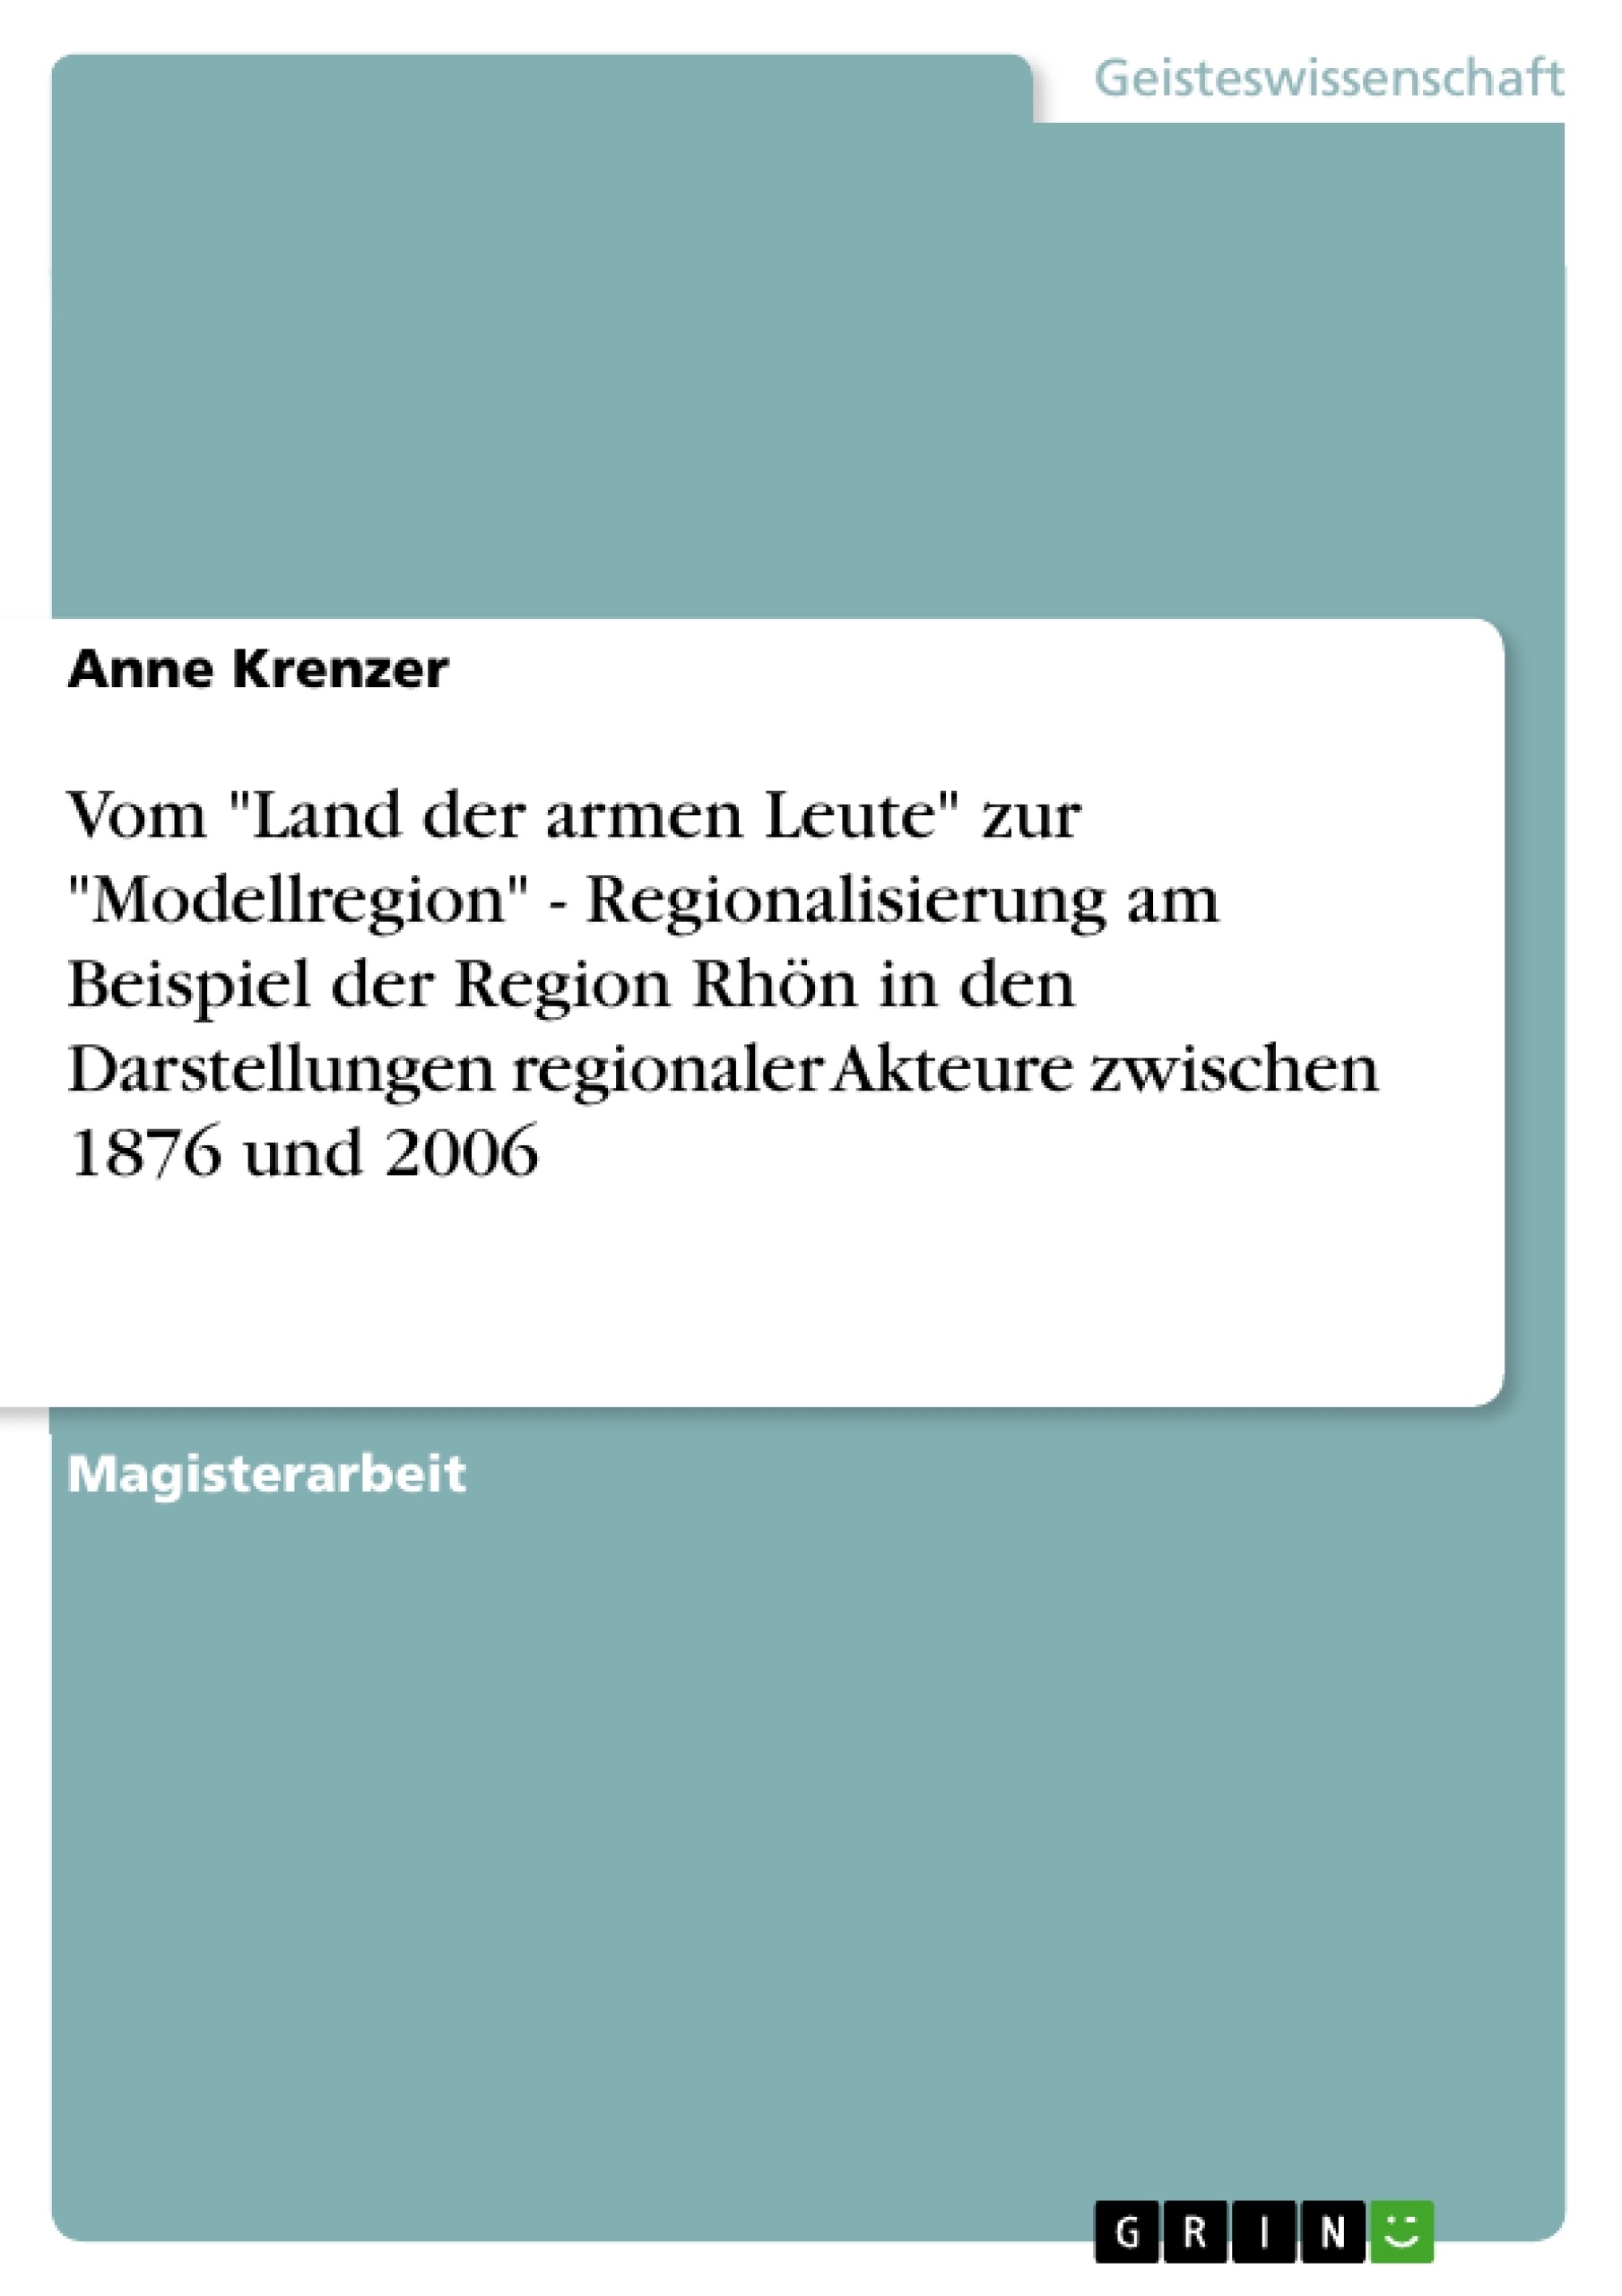 Titel: Vom "Land der armen Leute" zur "Modellregion" - Regionalisierung am Beispiel der Region Rhön in den Darstellungen regionaler Akteure zwischen 1876 und 2006